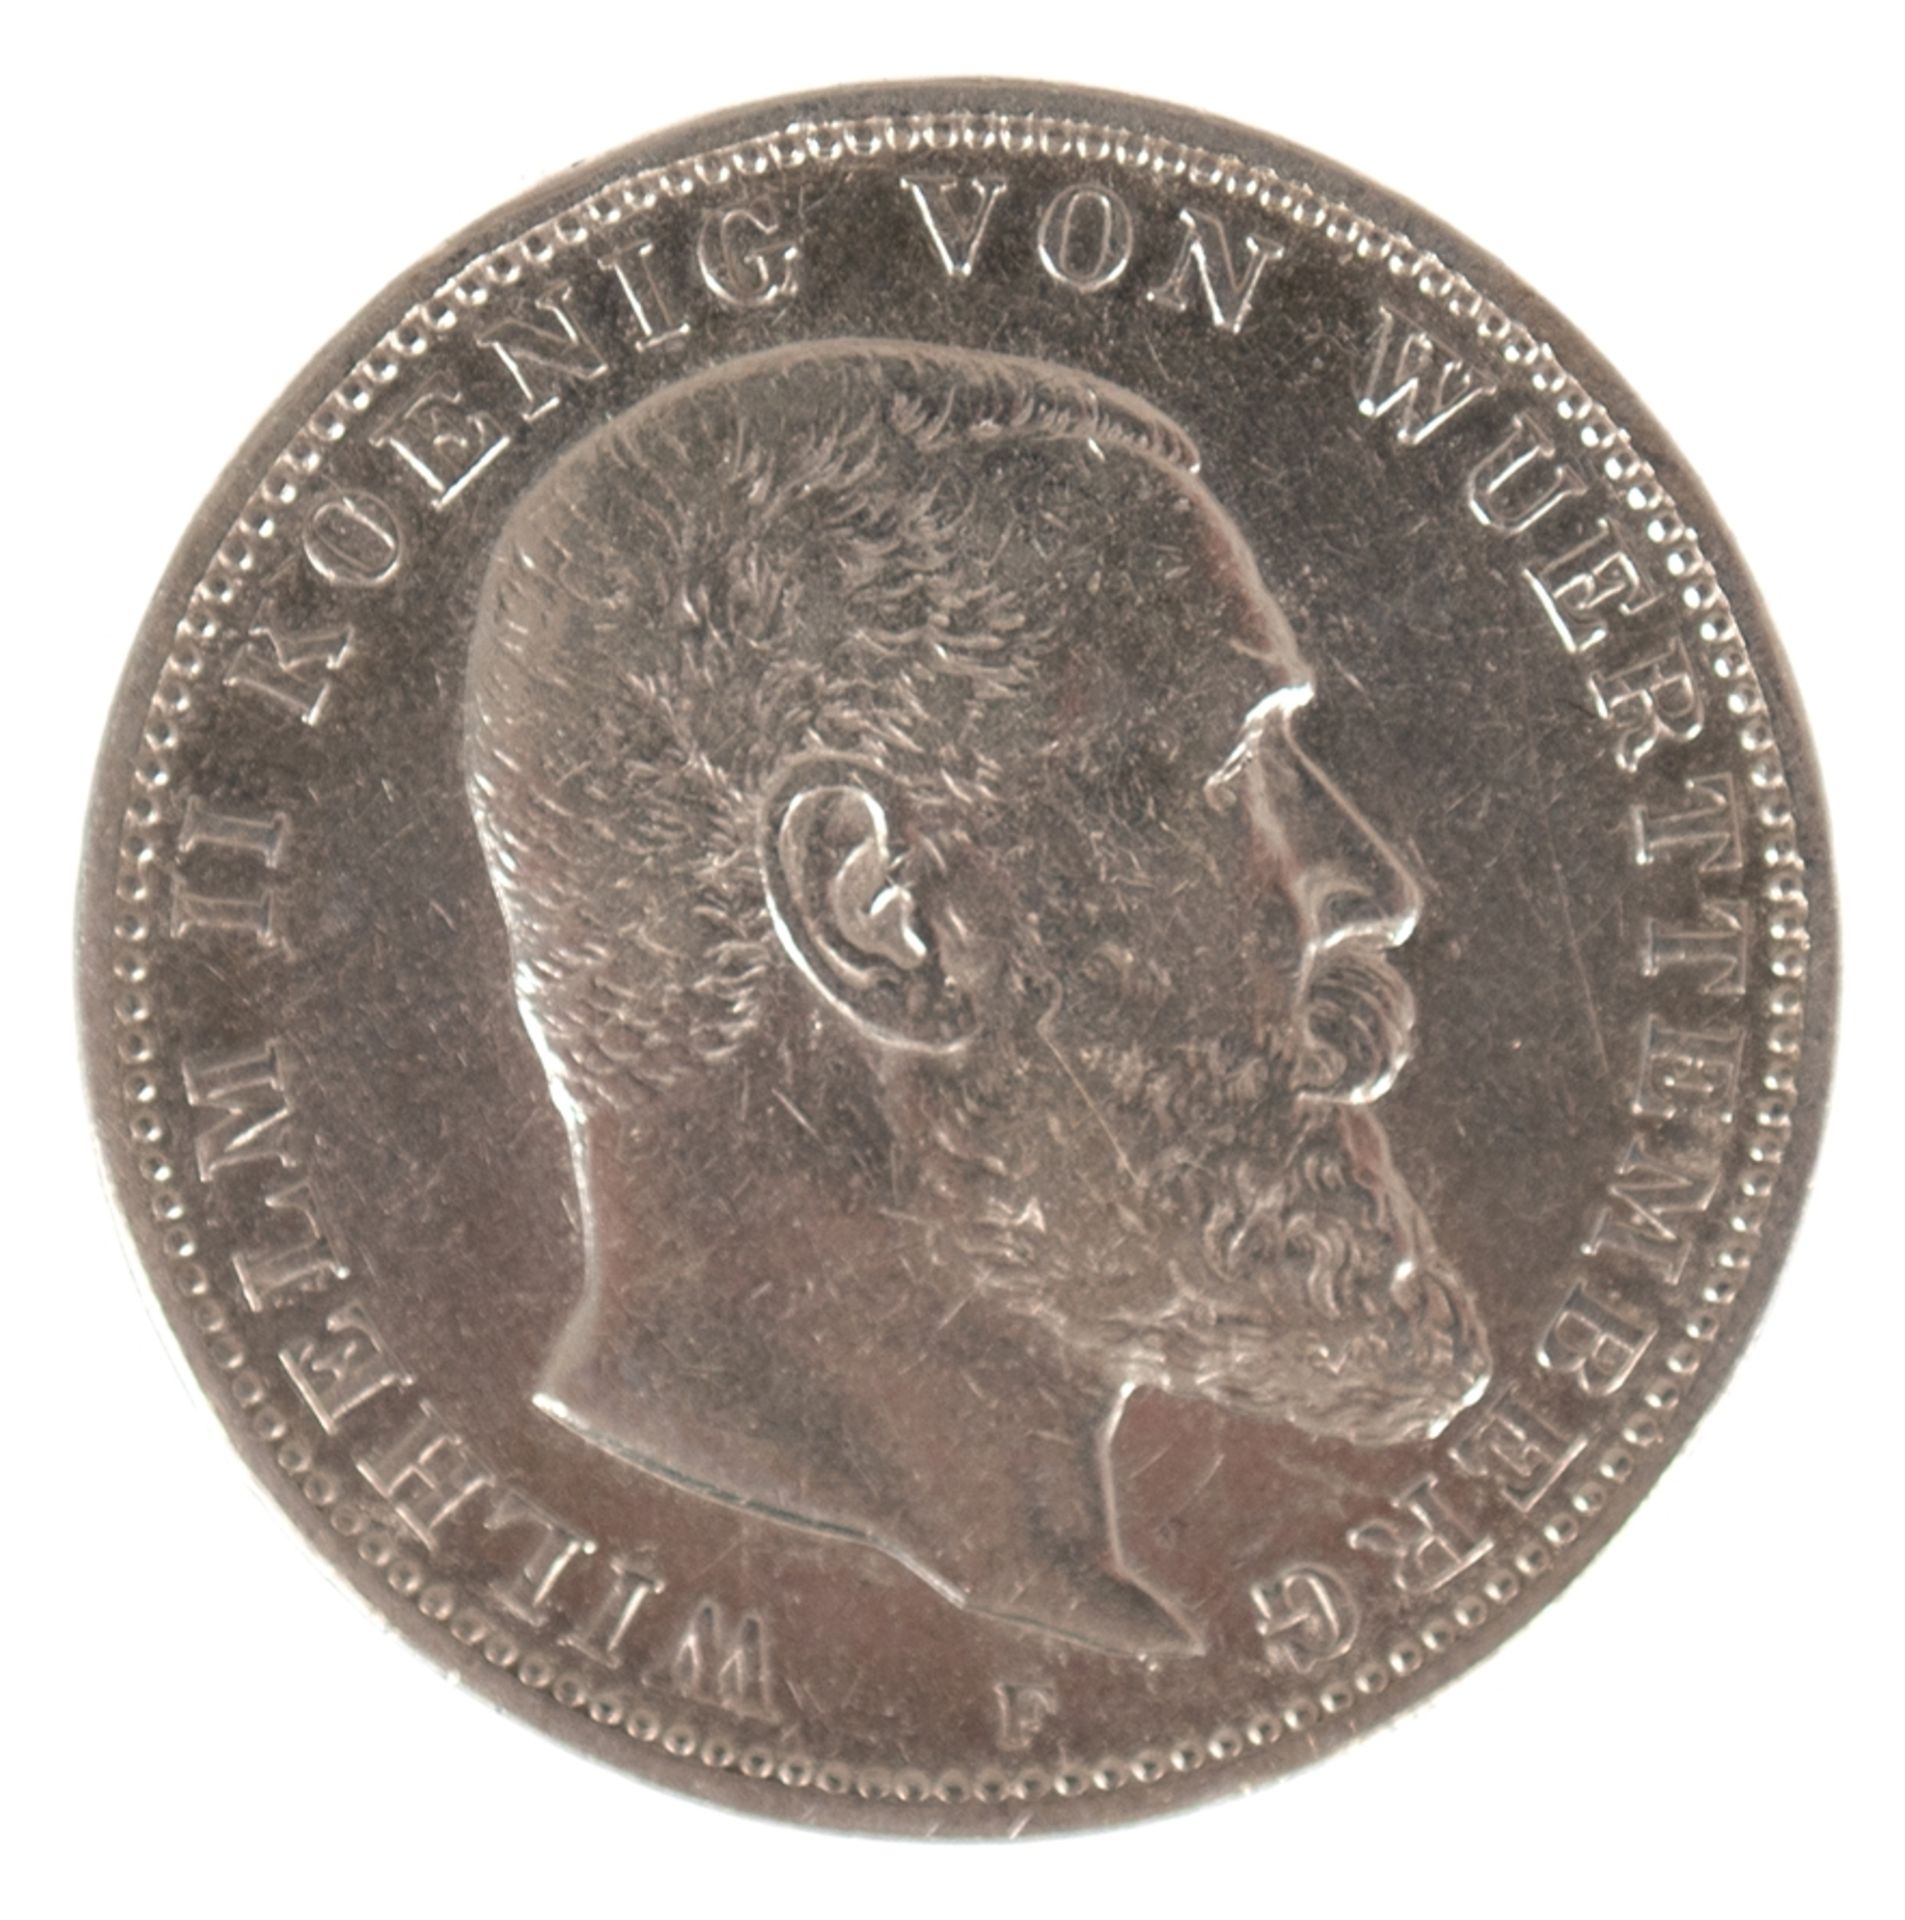 3 Mark, Deutsches Reich 1909, König von Würtemberg, 900er Silber - Image 2 of 2